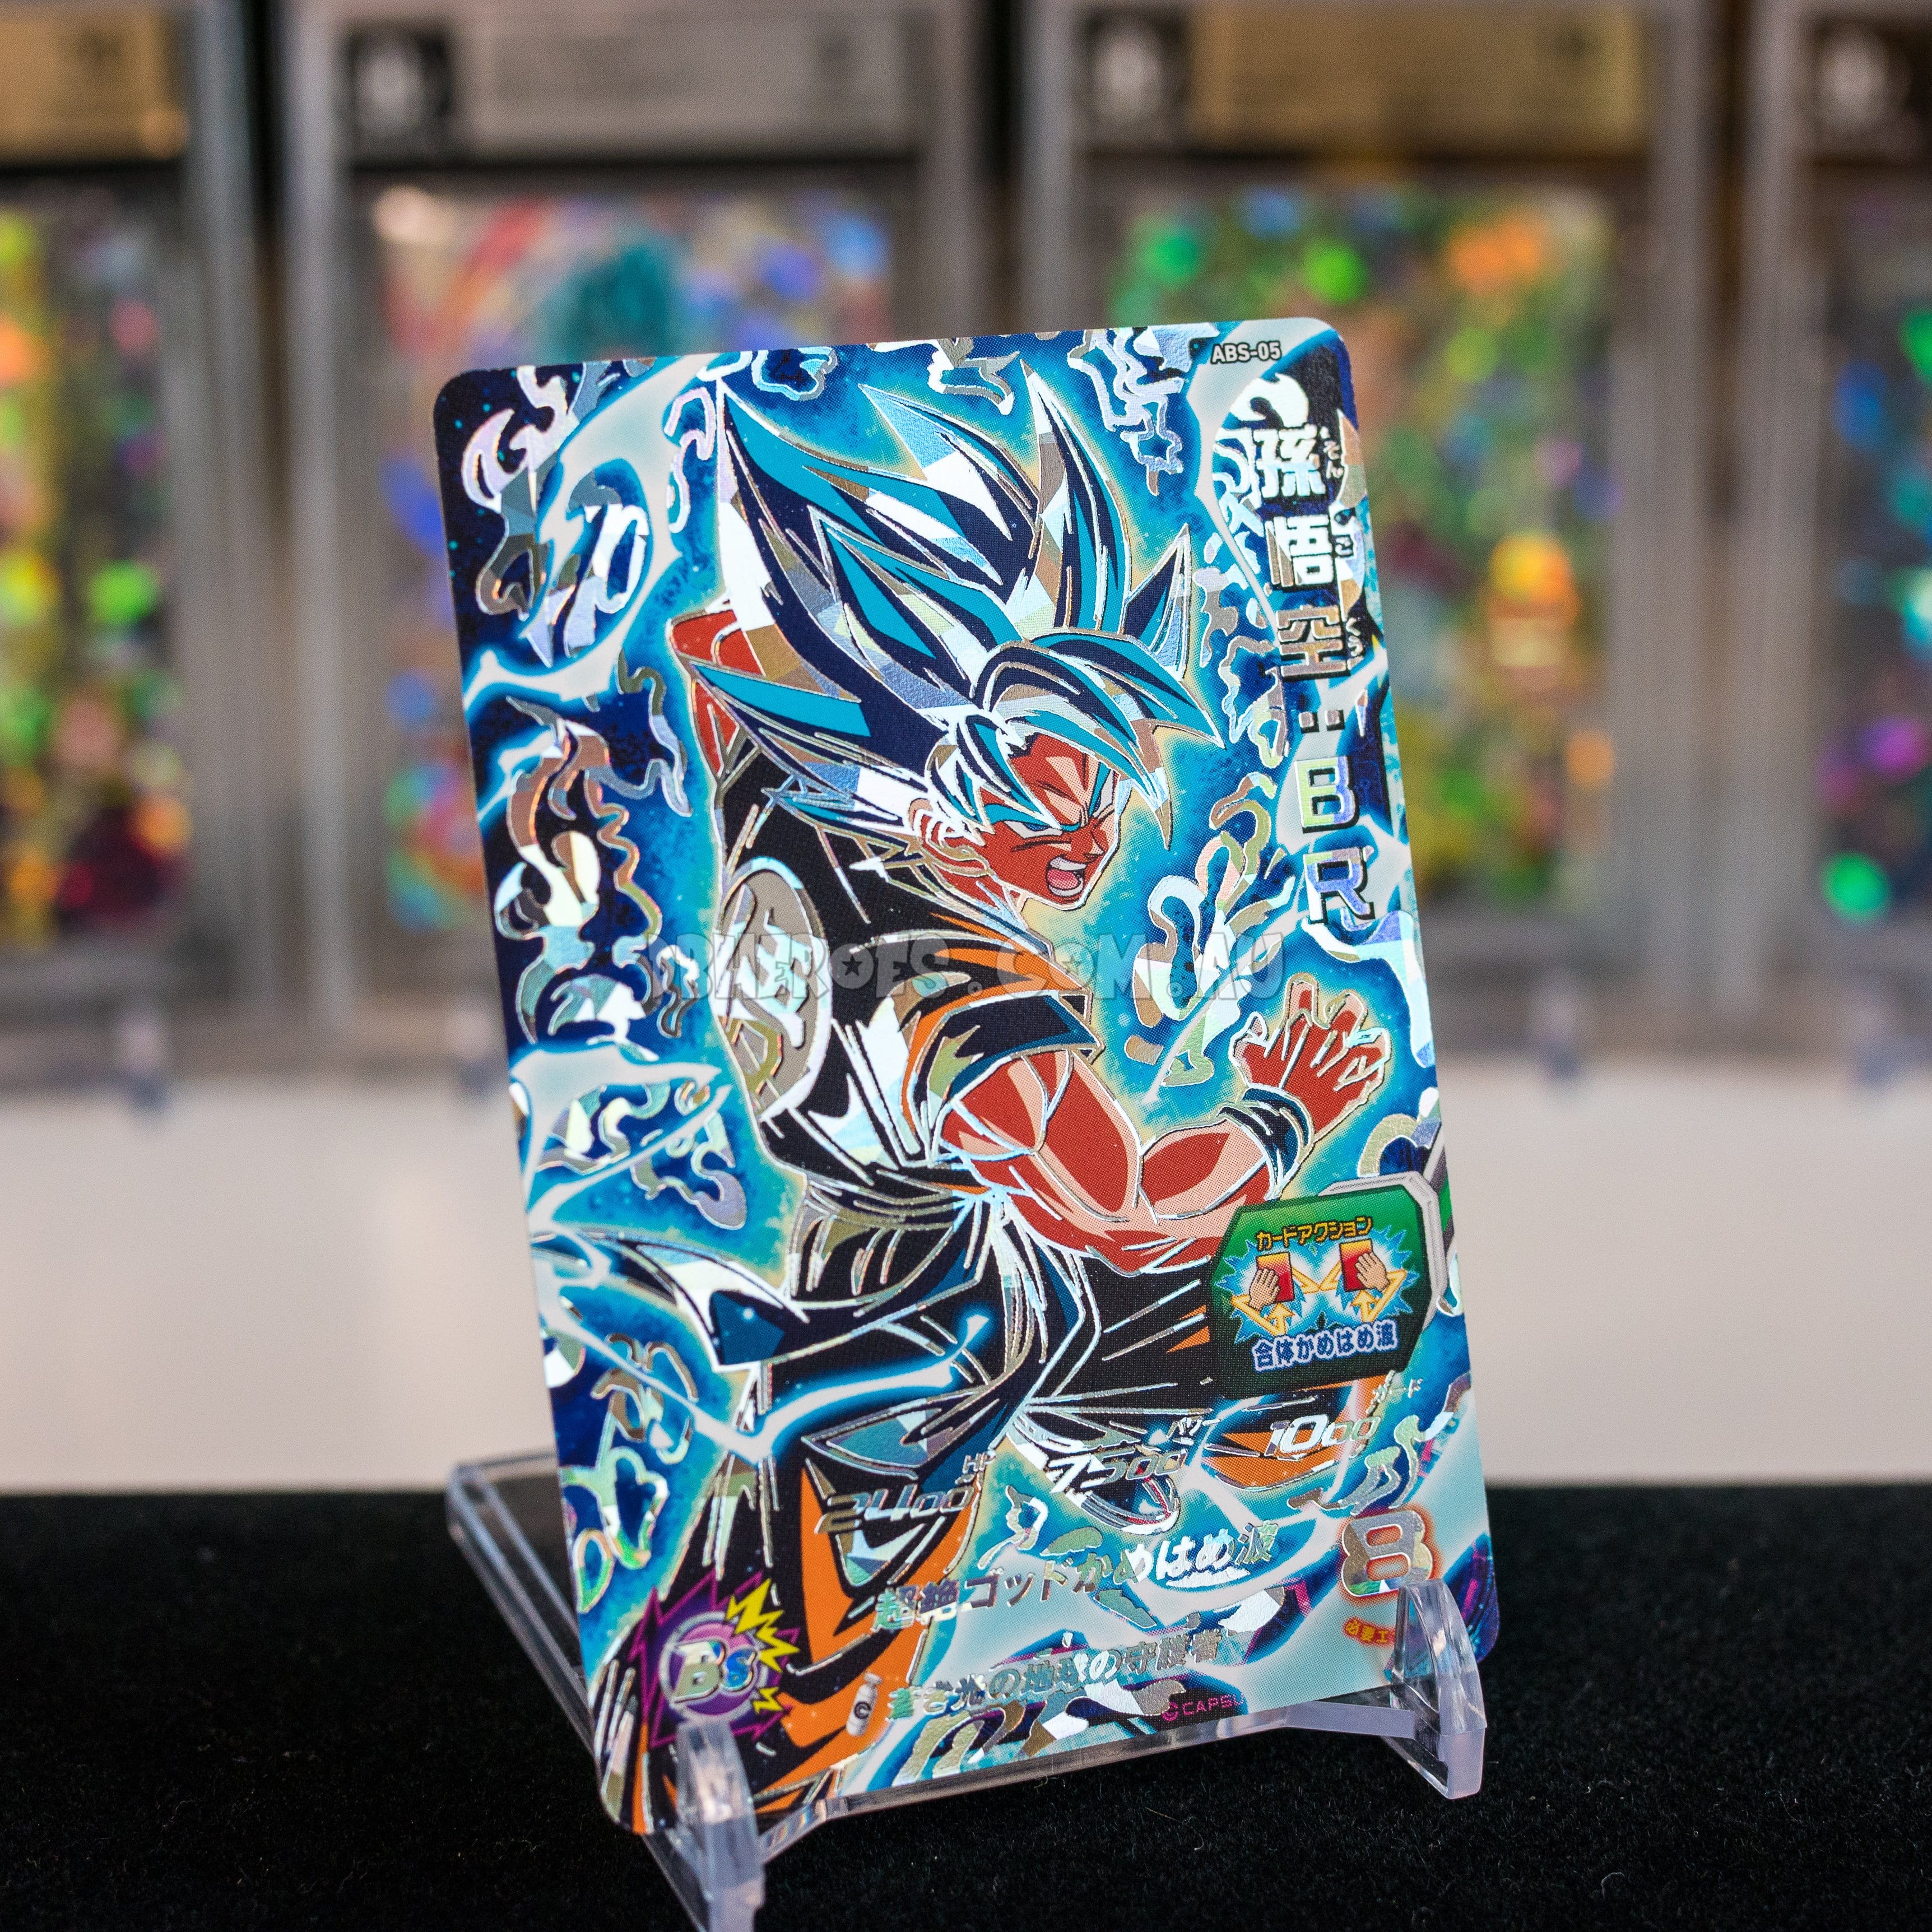 Goku super saiyan Blue by bessalius Spiral Notebook by Bessalius